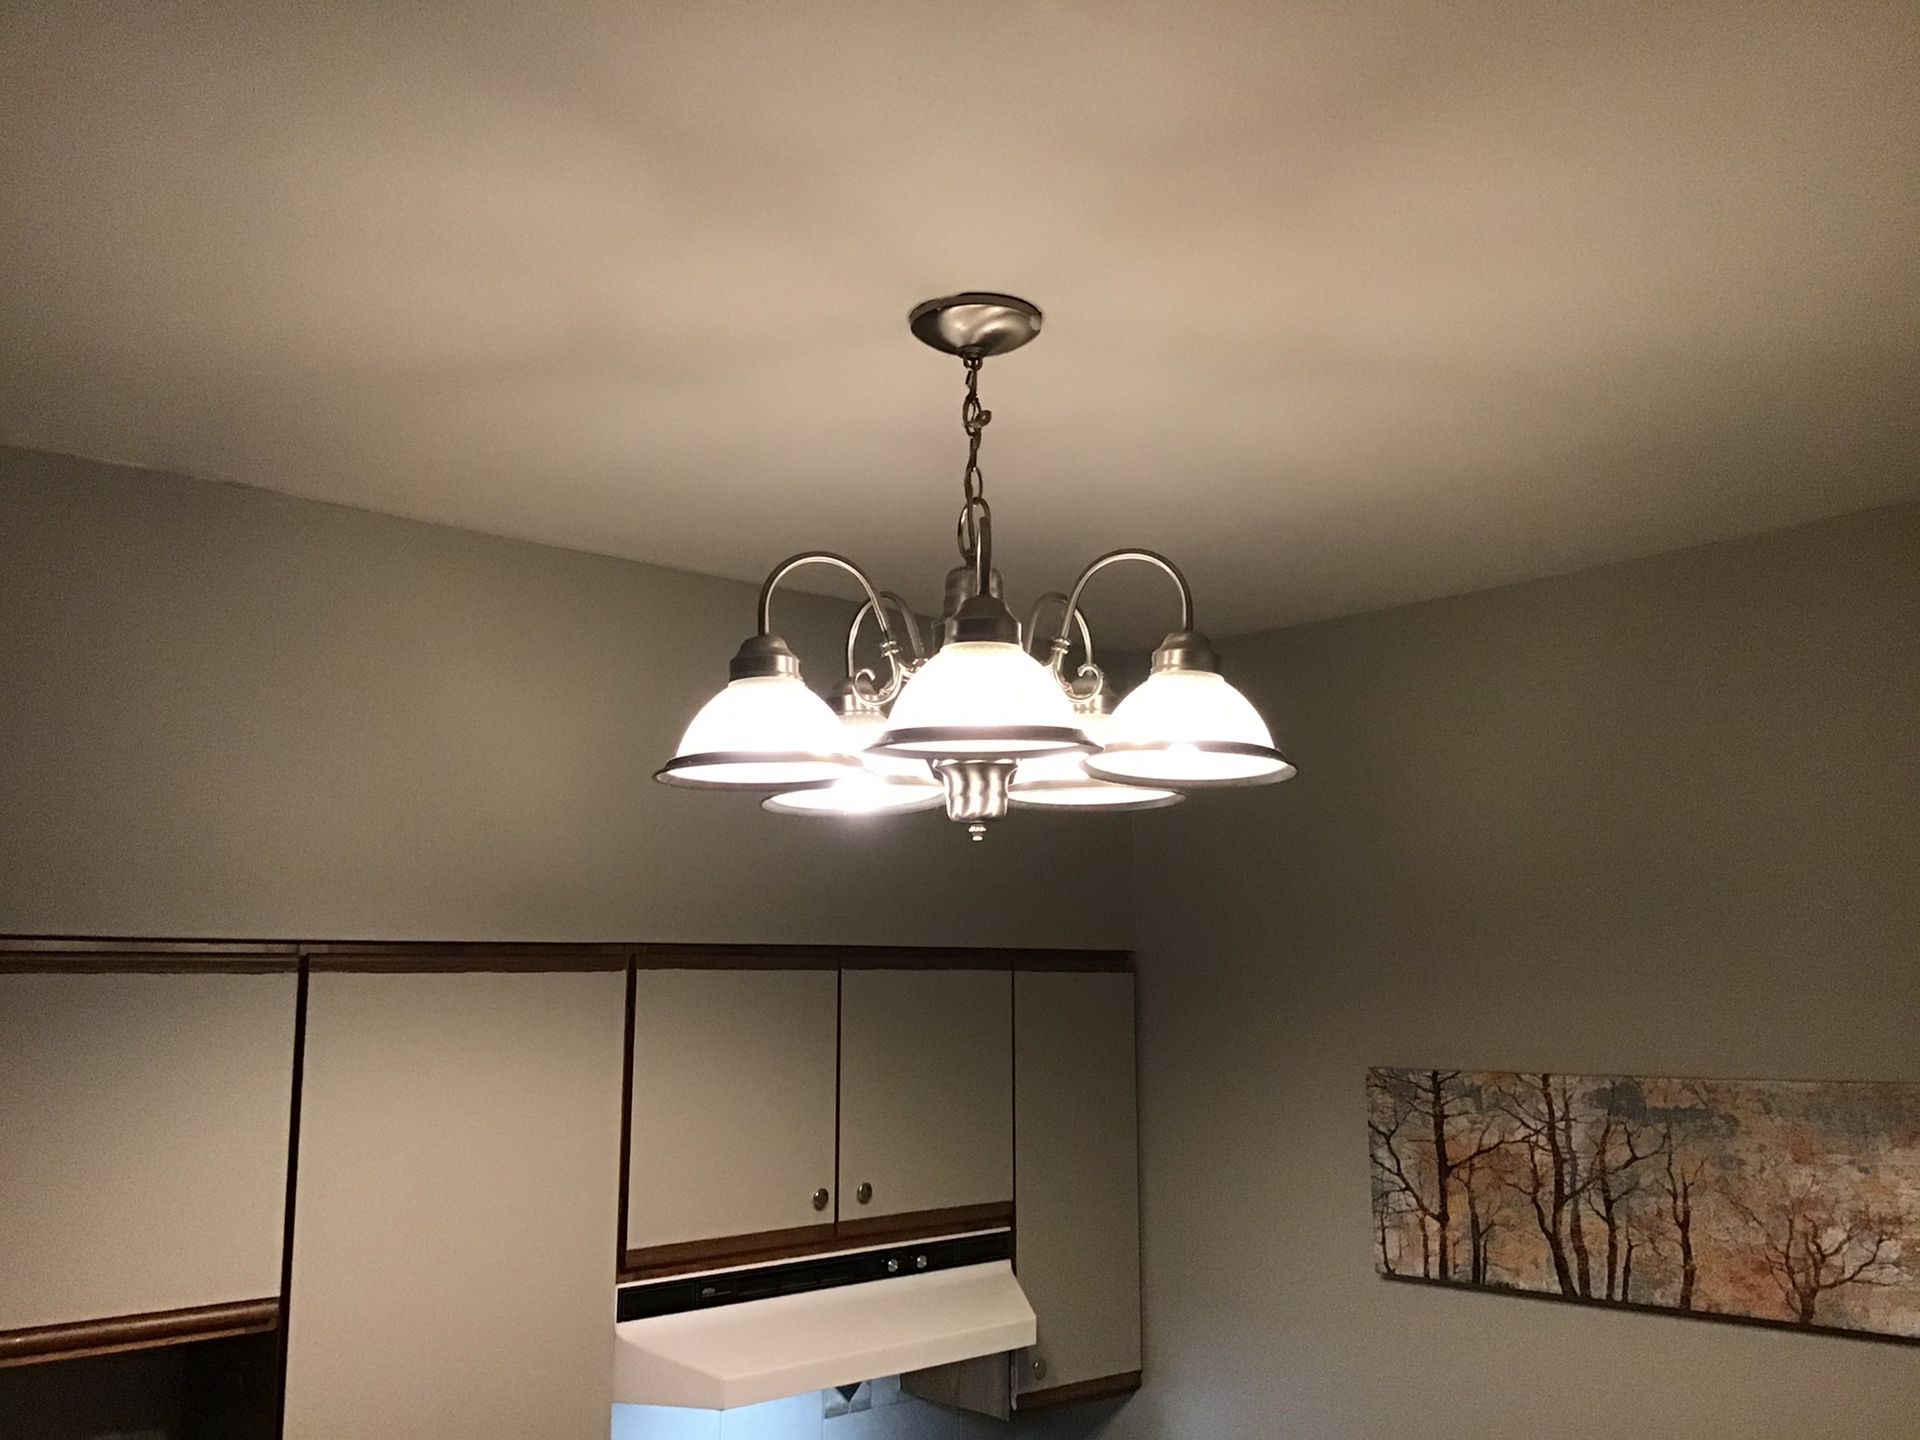 Hampton bay brush nickel light fixture chandelier